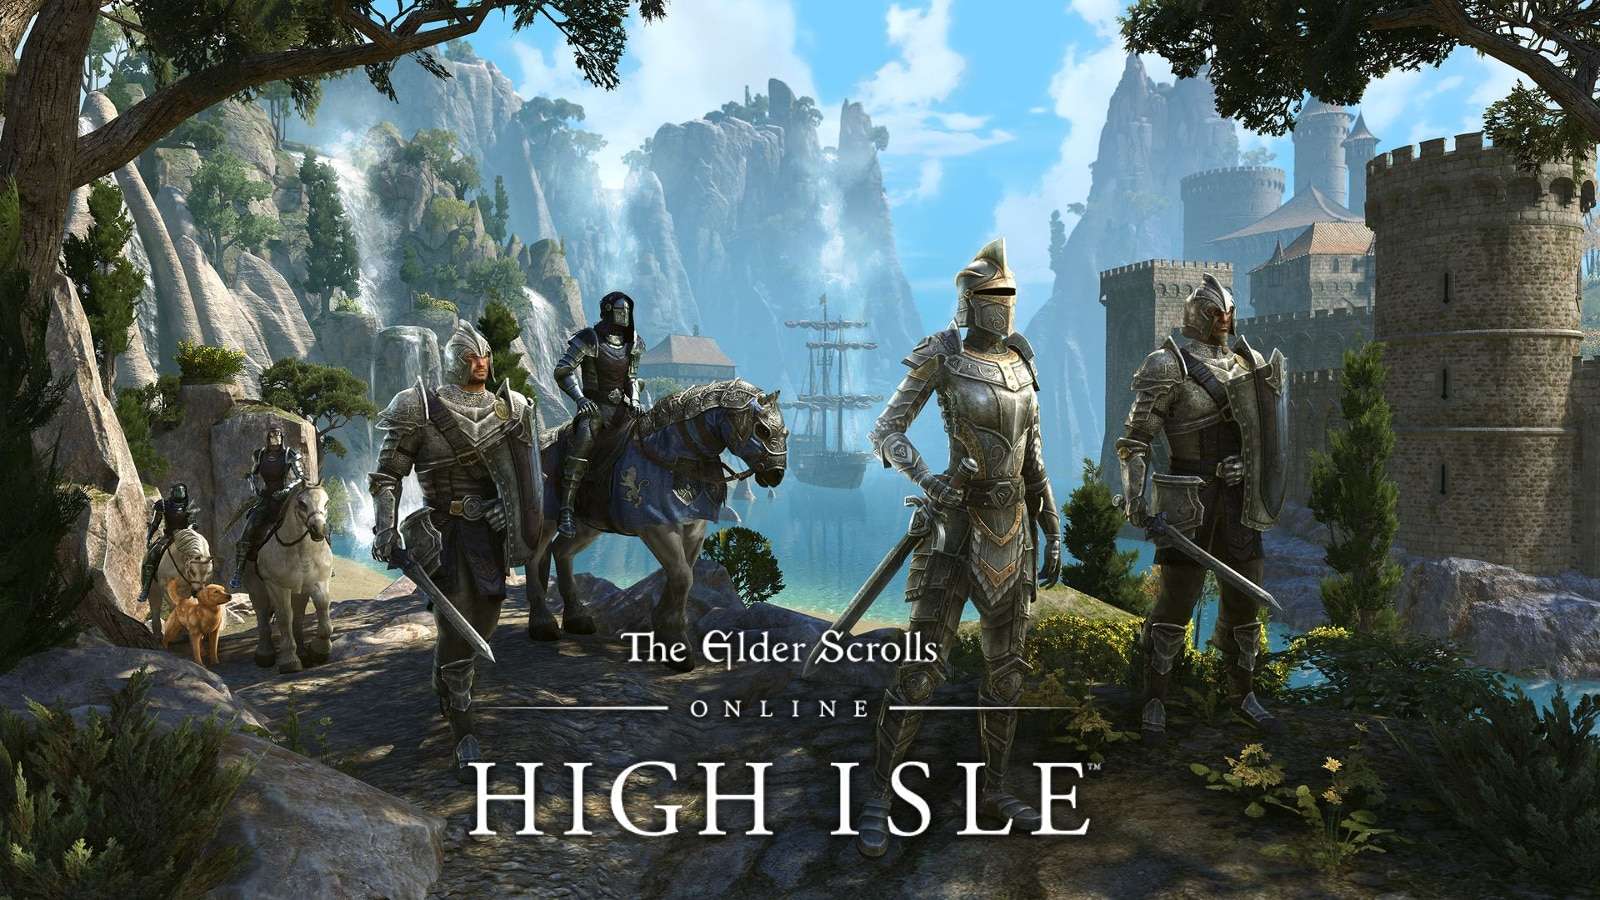 High Isle